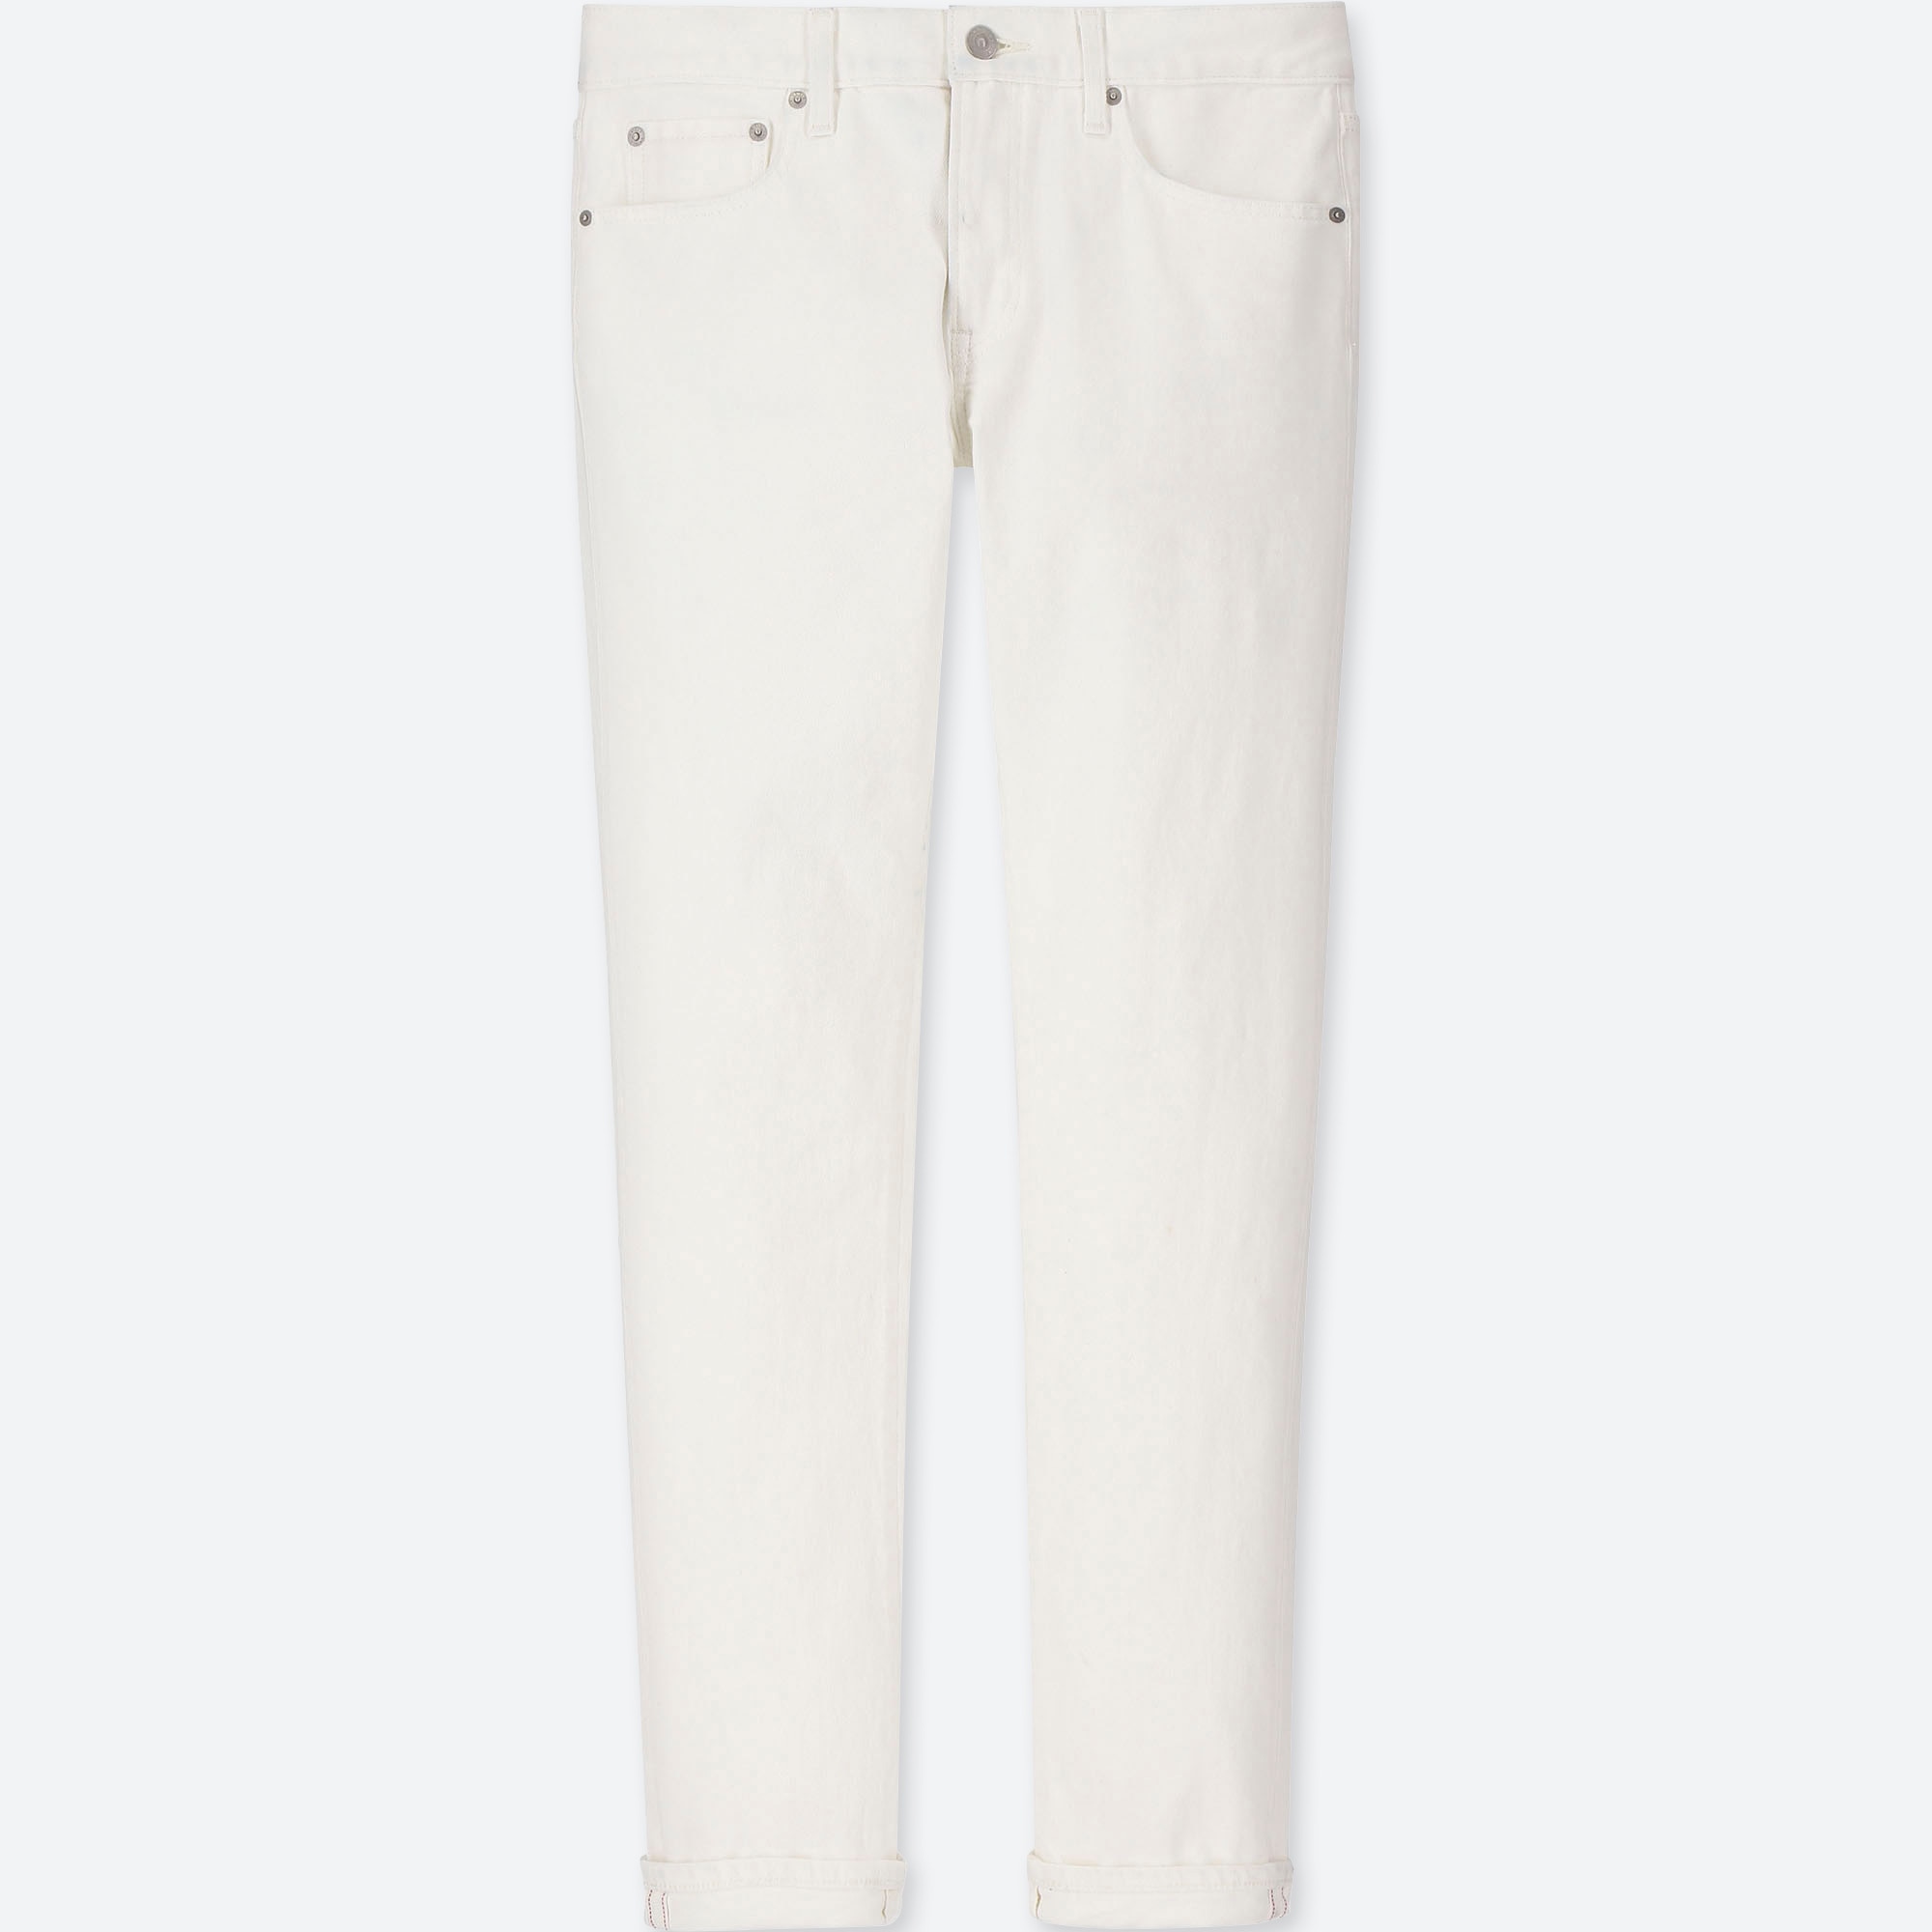 white super skinny jeans for guys